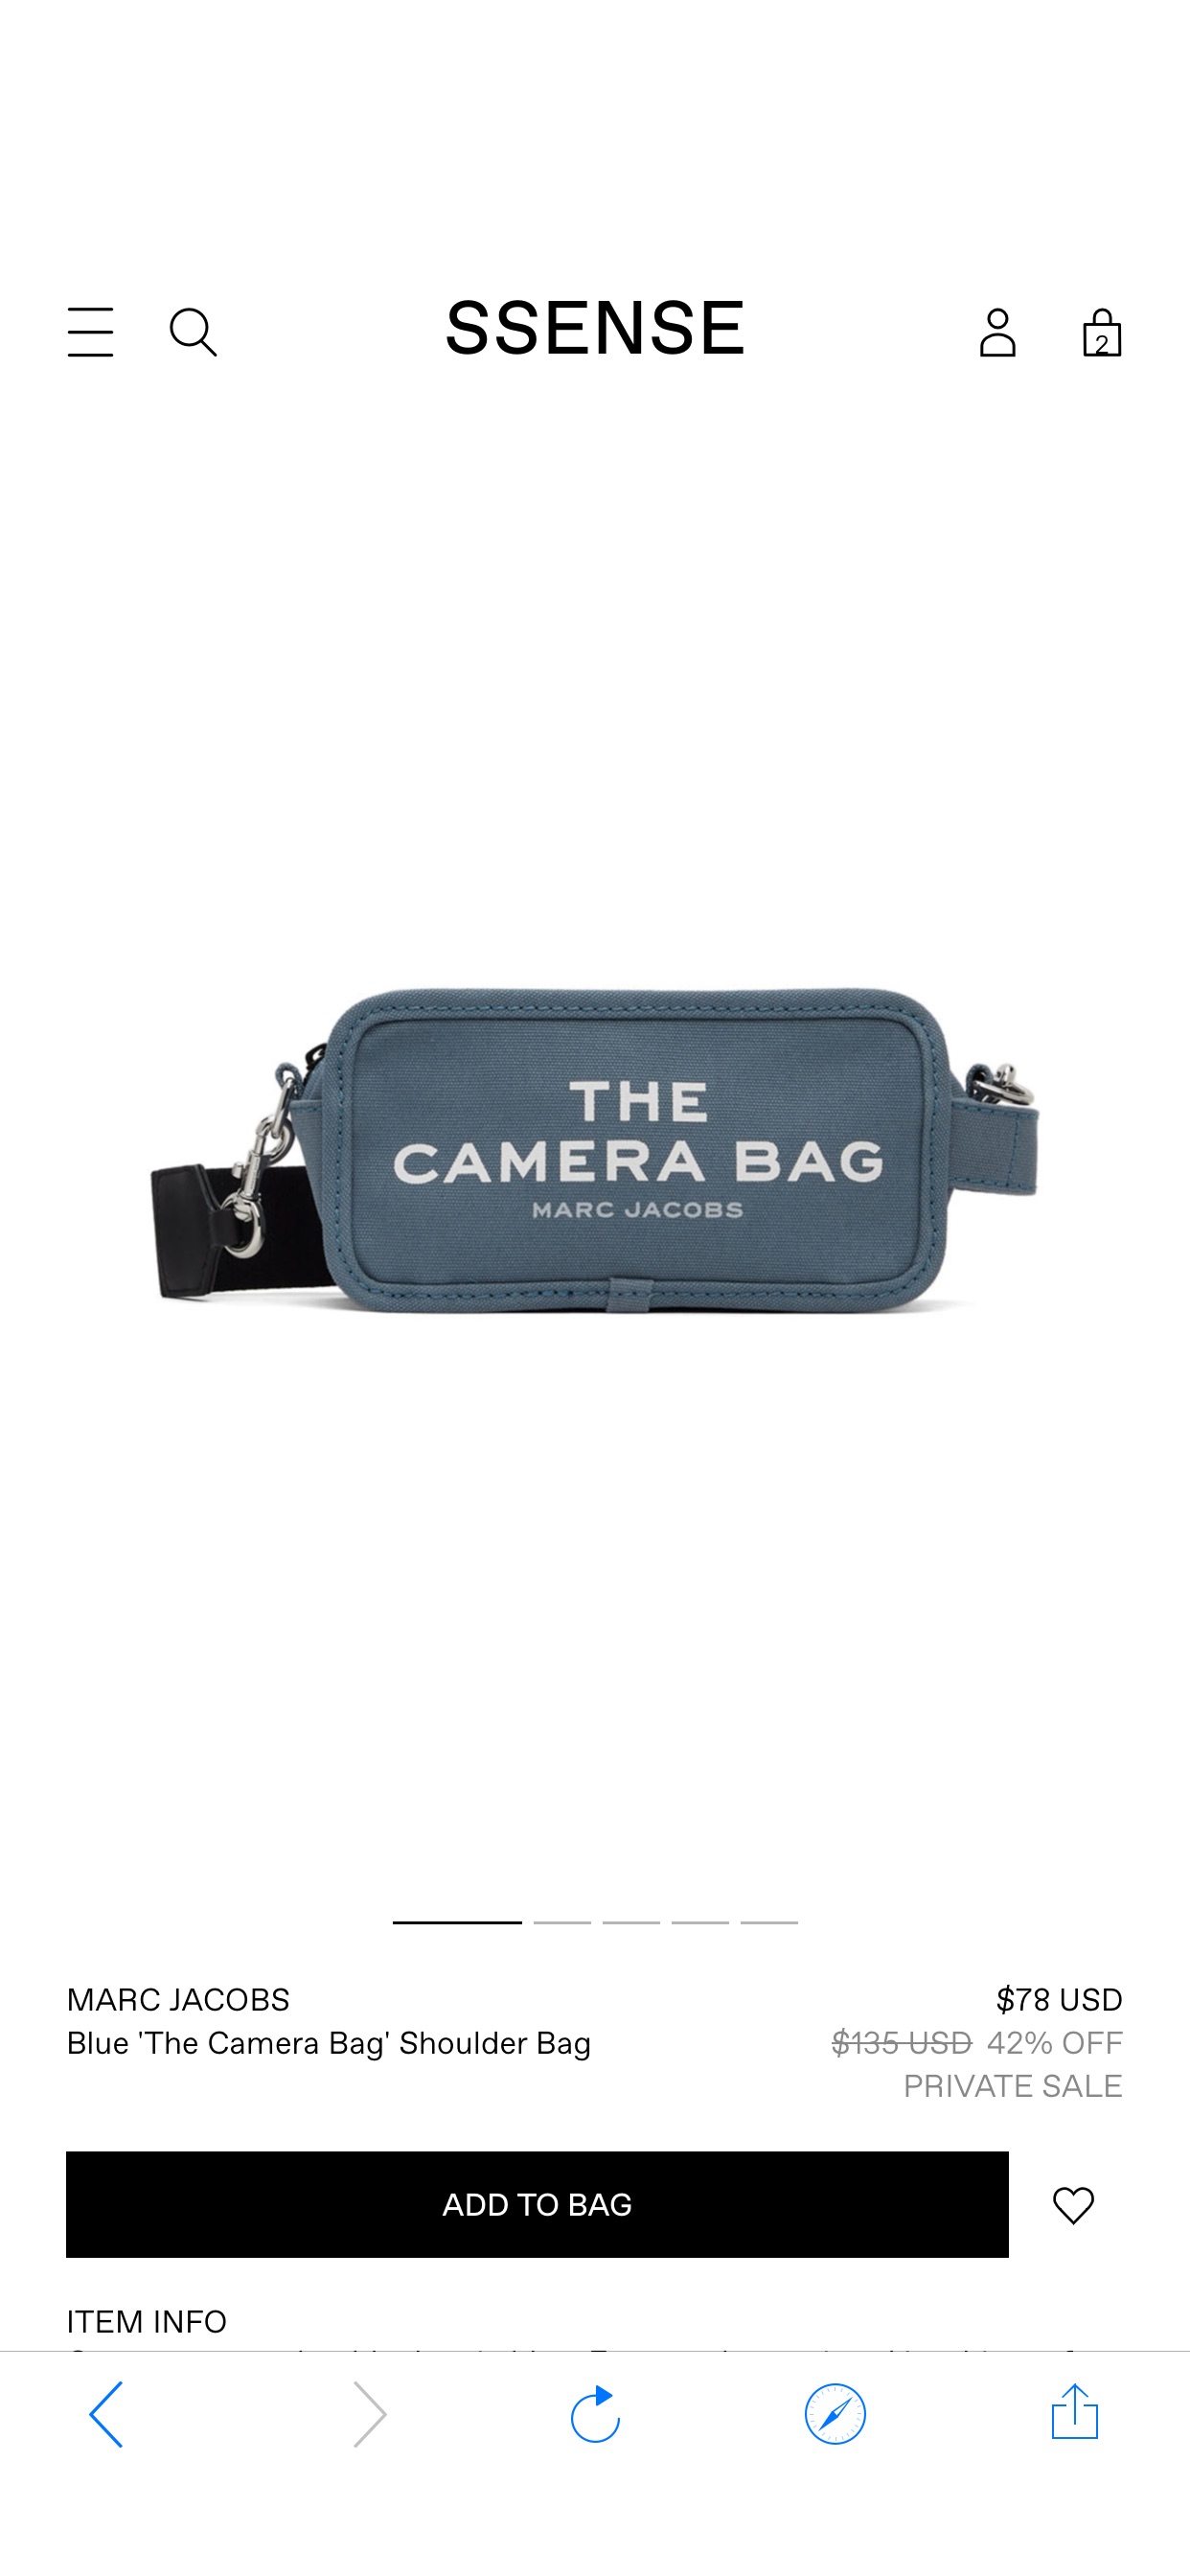 Blue 'The Camera Bag' Shoulder Bag by Marc Jacobs on Sale